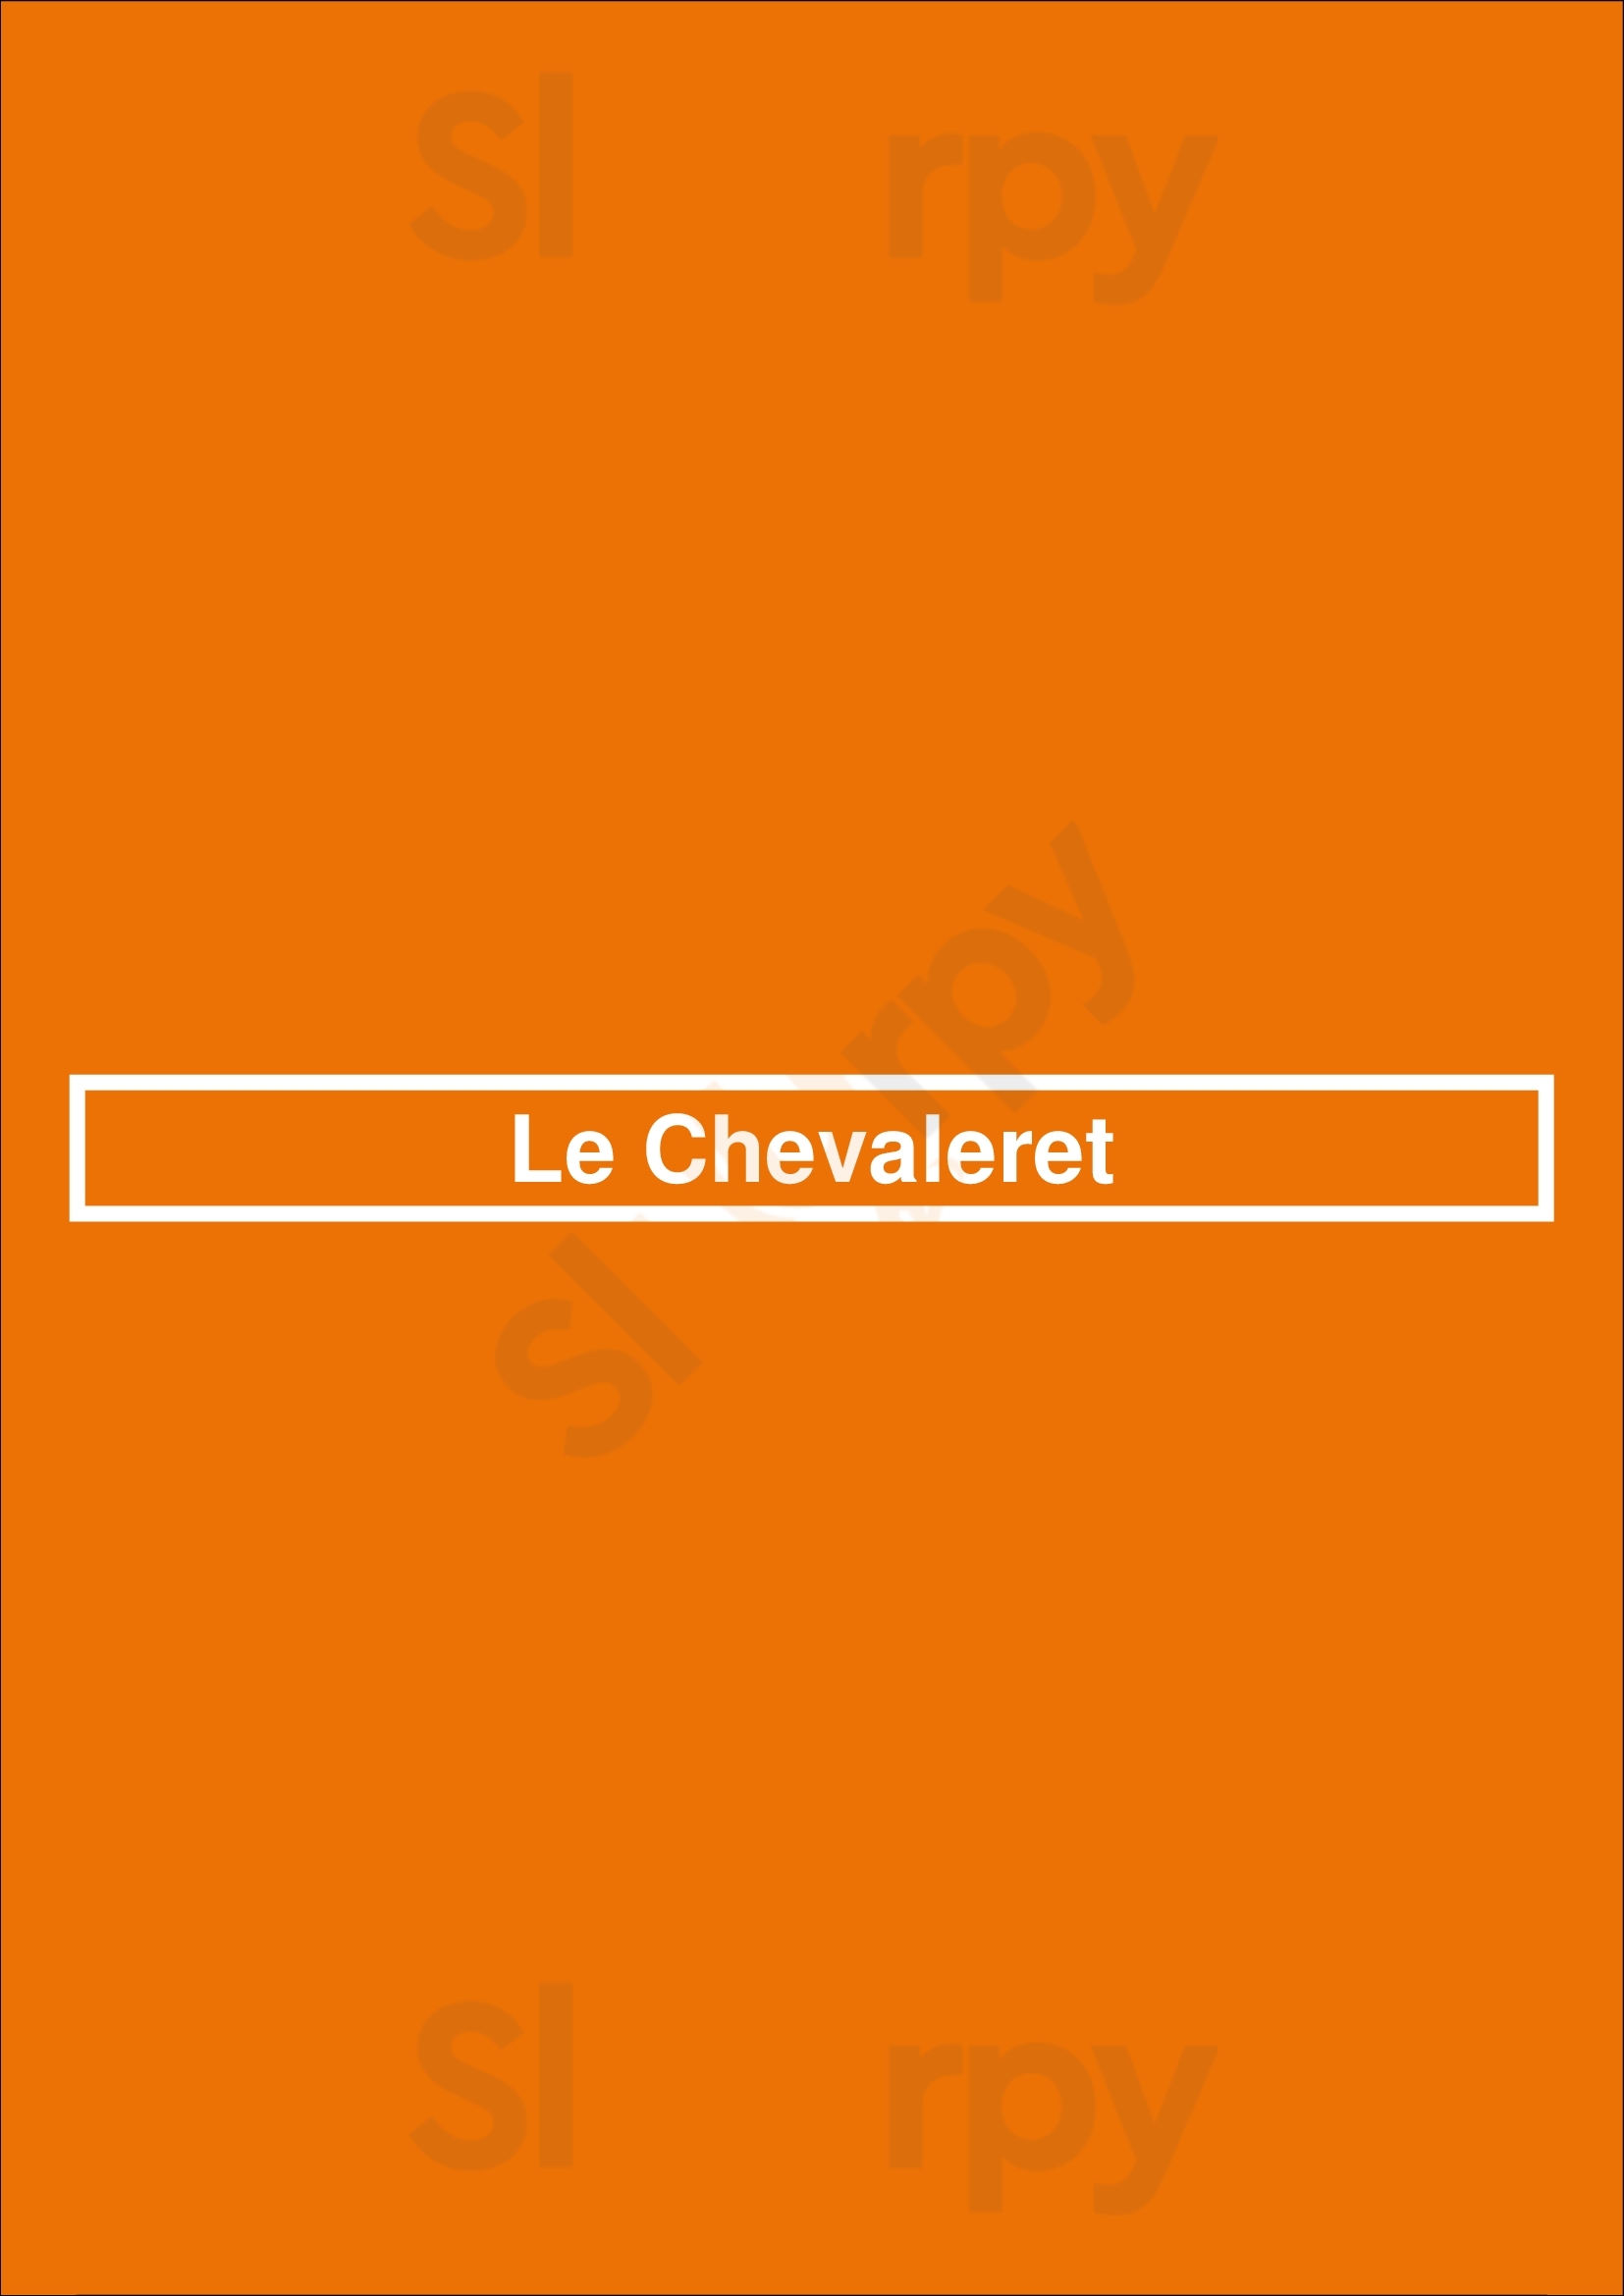 Le Chevaleret Paris Menu - 1